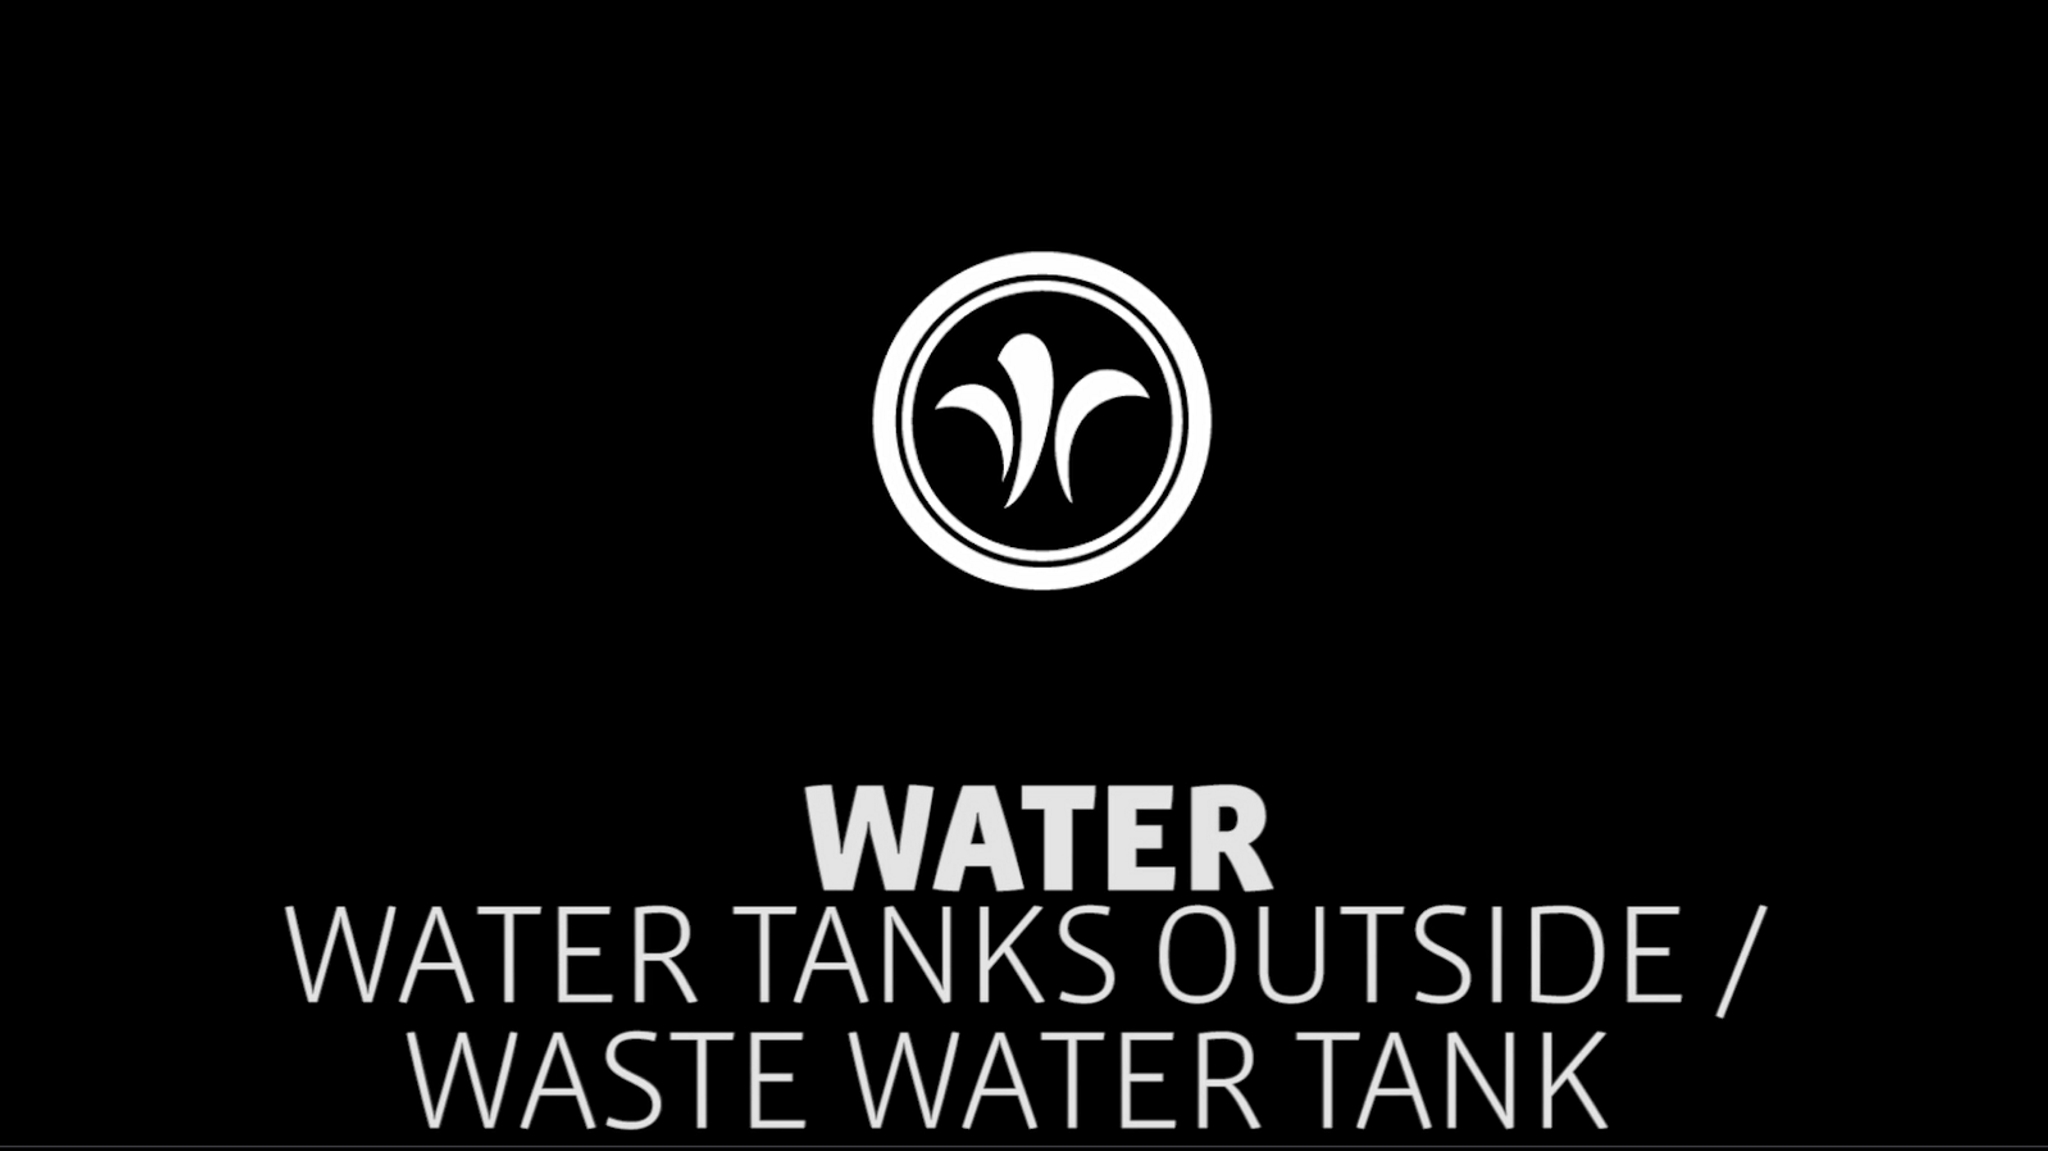 motorhome waste water tank // niesmann+bischoff - luxury motorhome (model FLAIR) // 2019 // WA7
